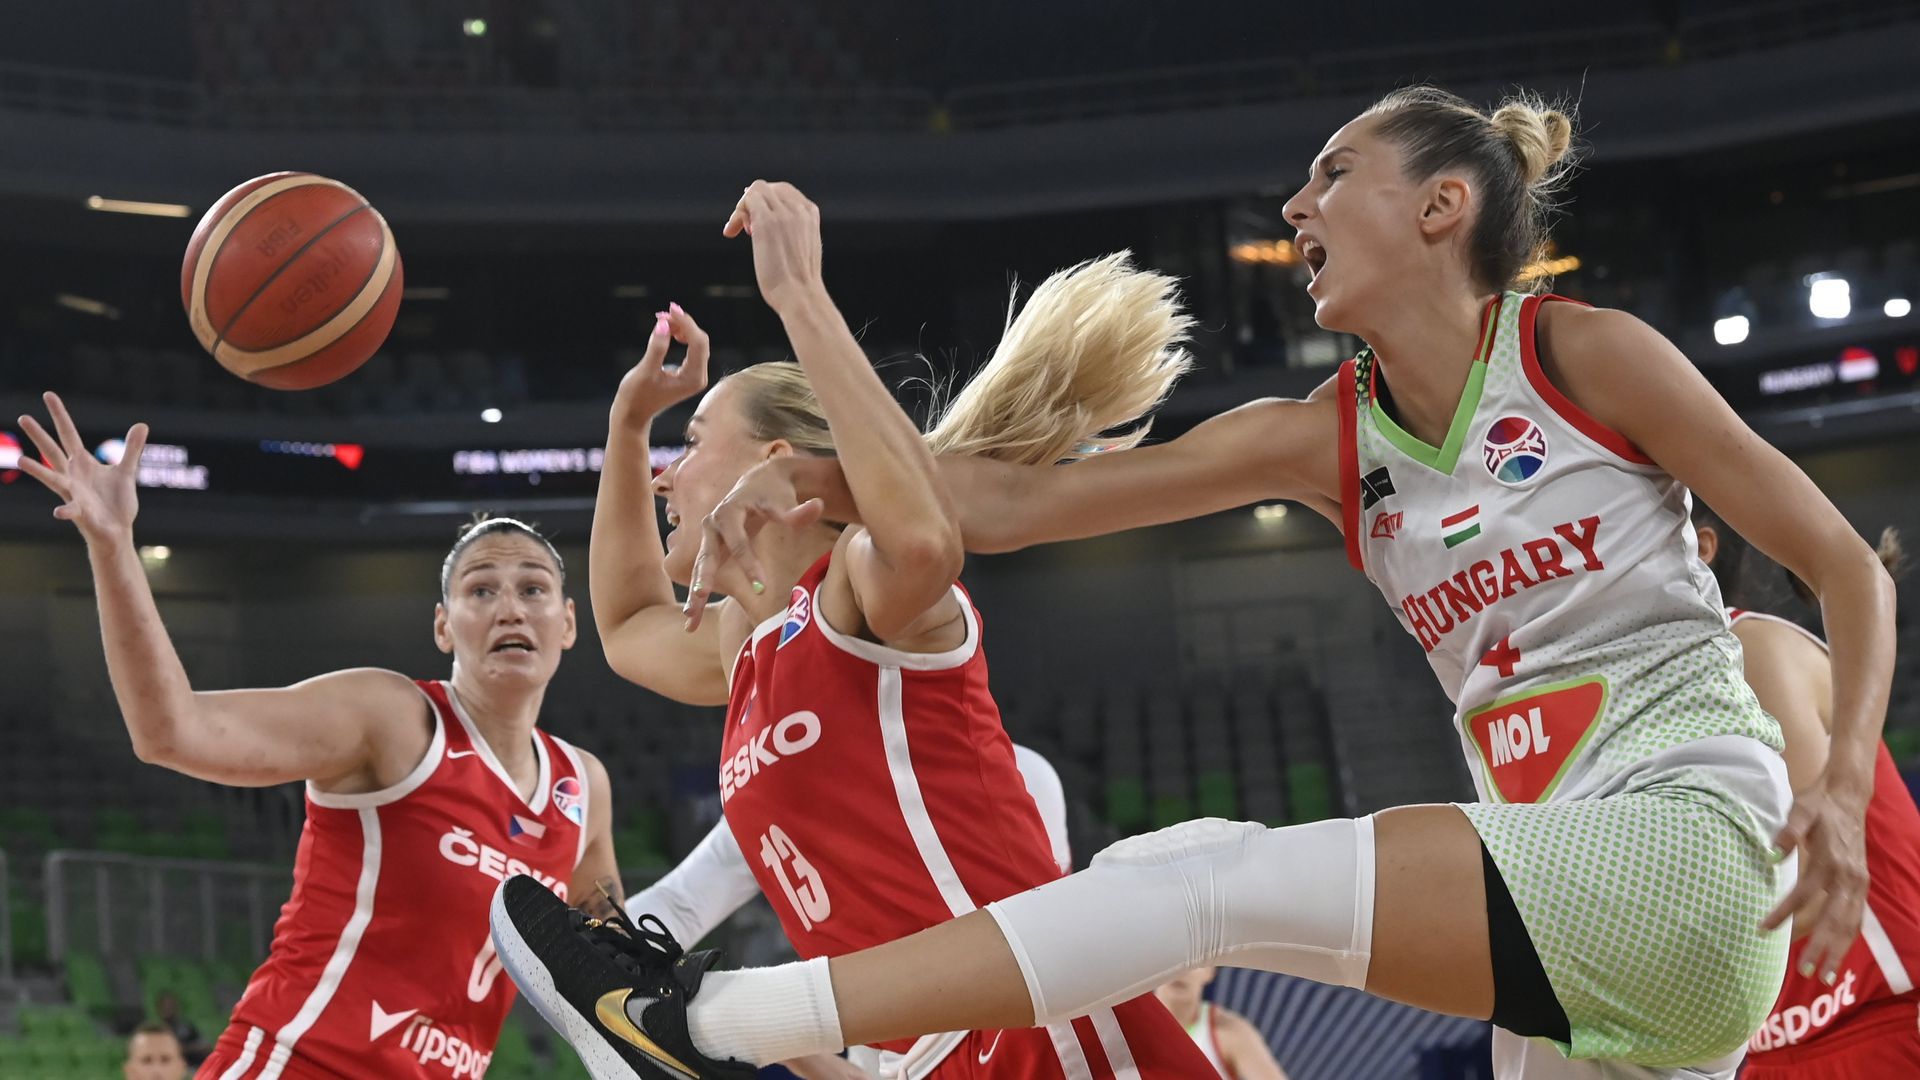 Huszonhat év után elődöntős a magyar női kosárlabda-válogatott az Európa-bajnokságon. (Fotó: Kovács Tamás/MTI)